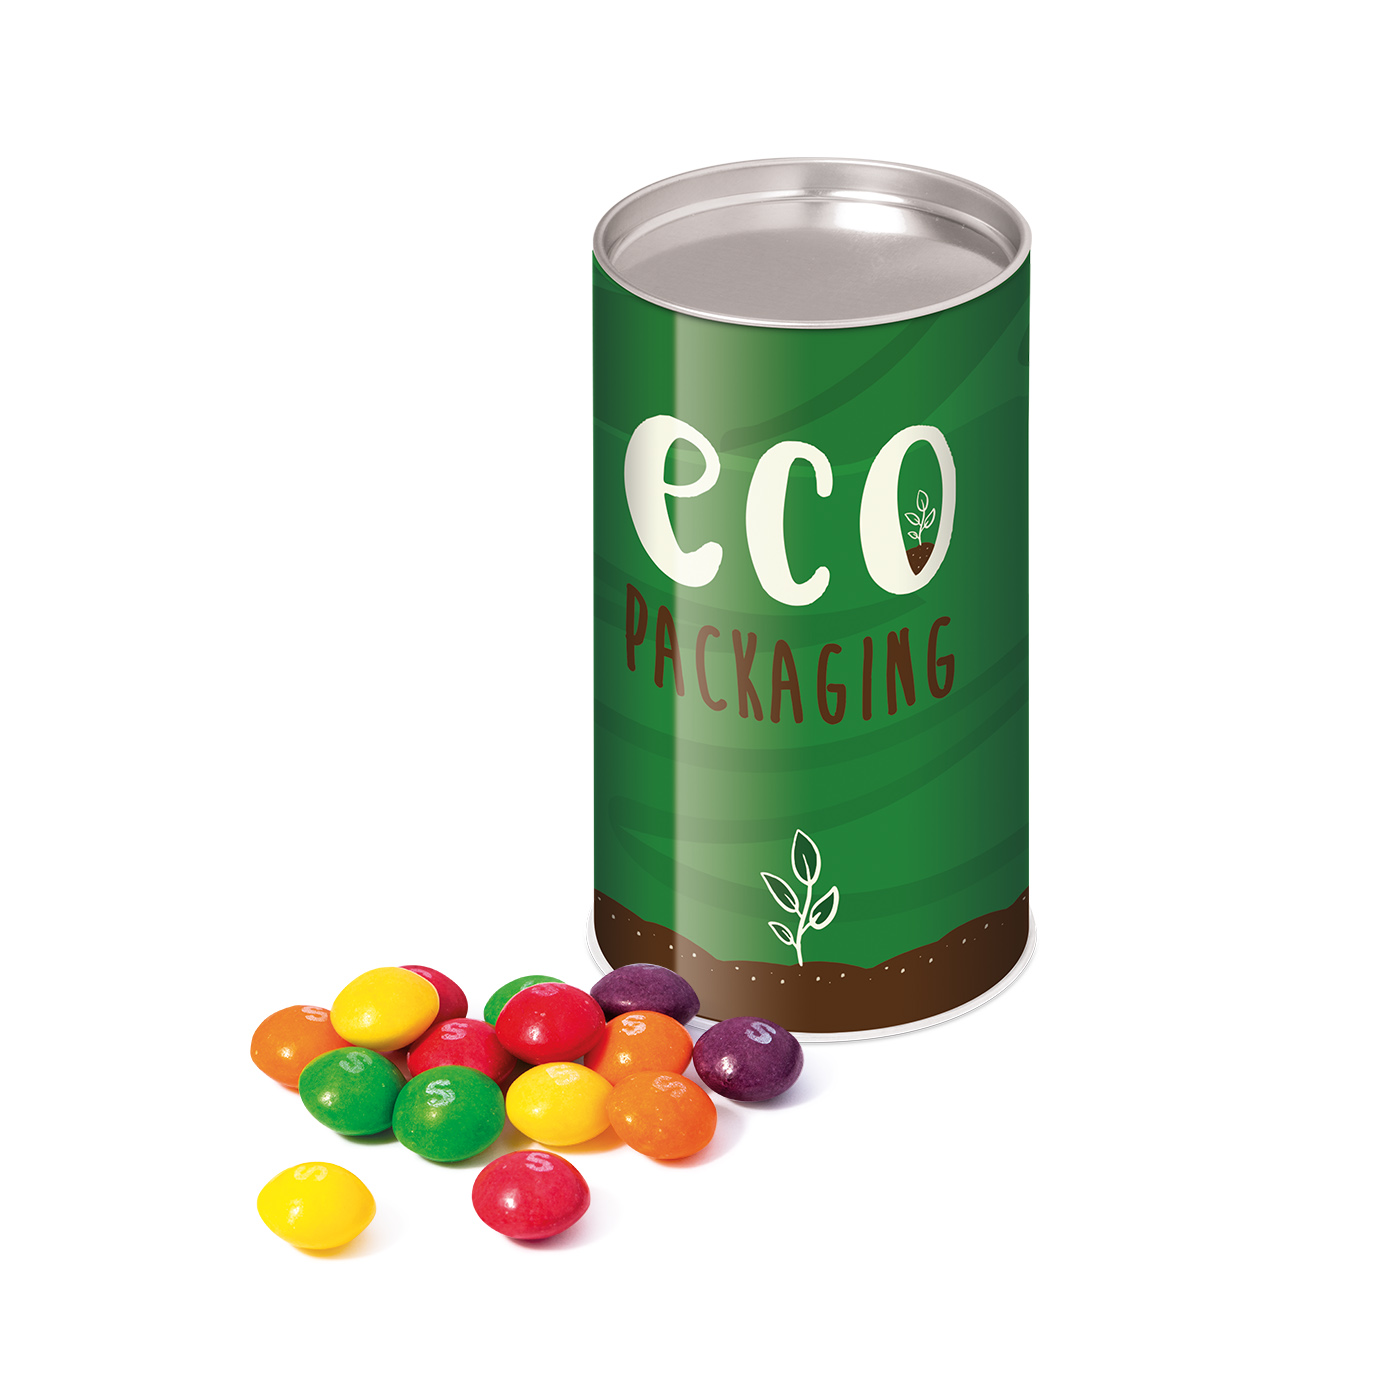 Eco Range – Small snack tube - Skittles